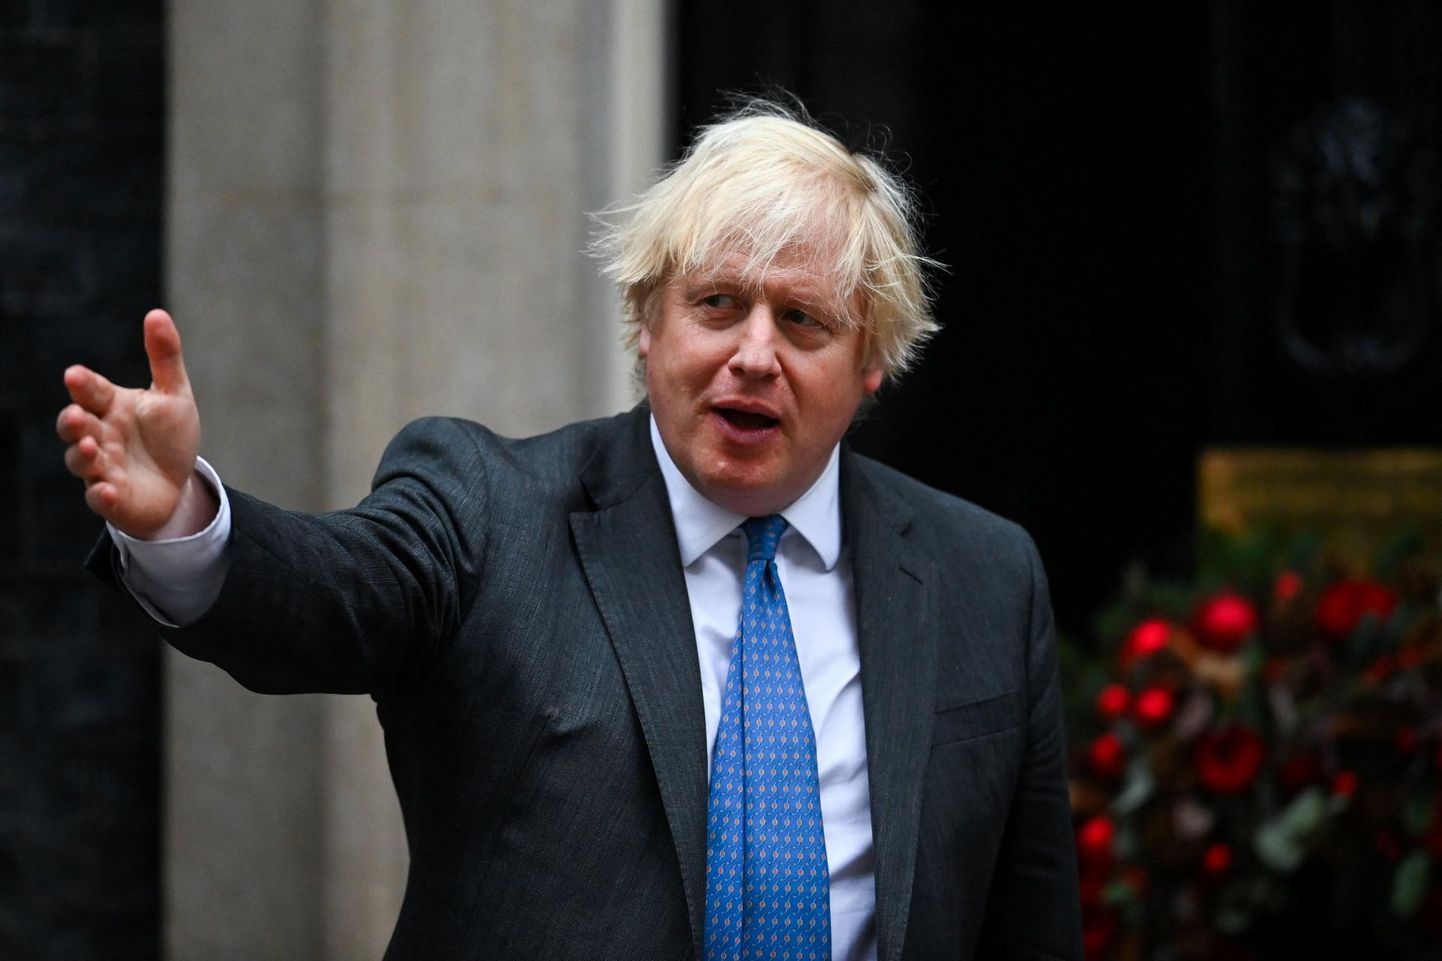 Briti peaminister Boris Johnson on sattunud karmi kriitika alla karantiini ajal peetud peo pärast.

FOTO: Dylan Martinez